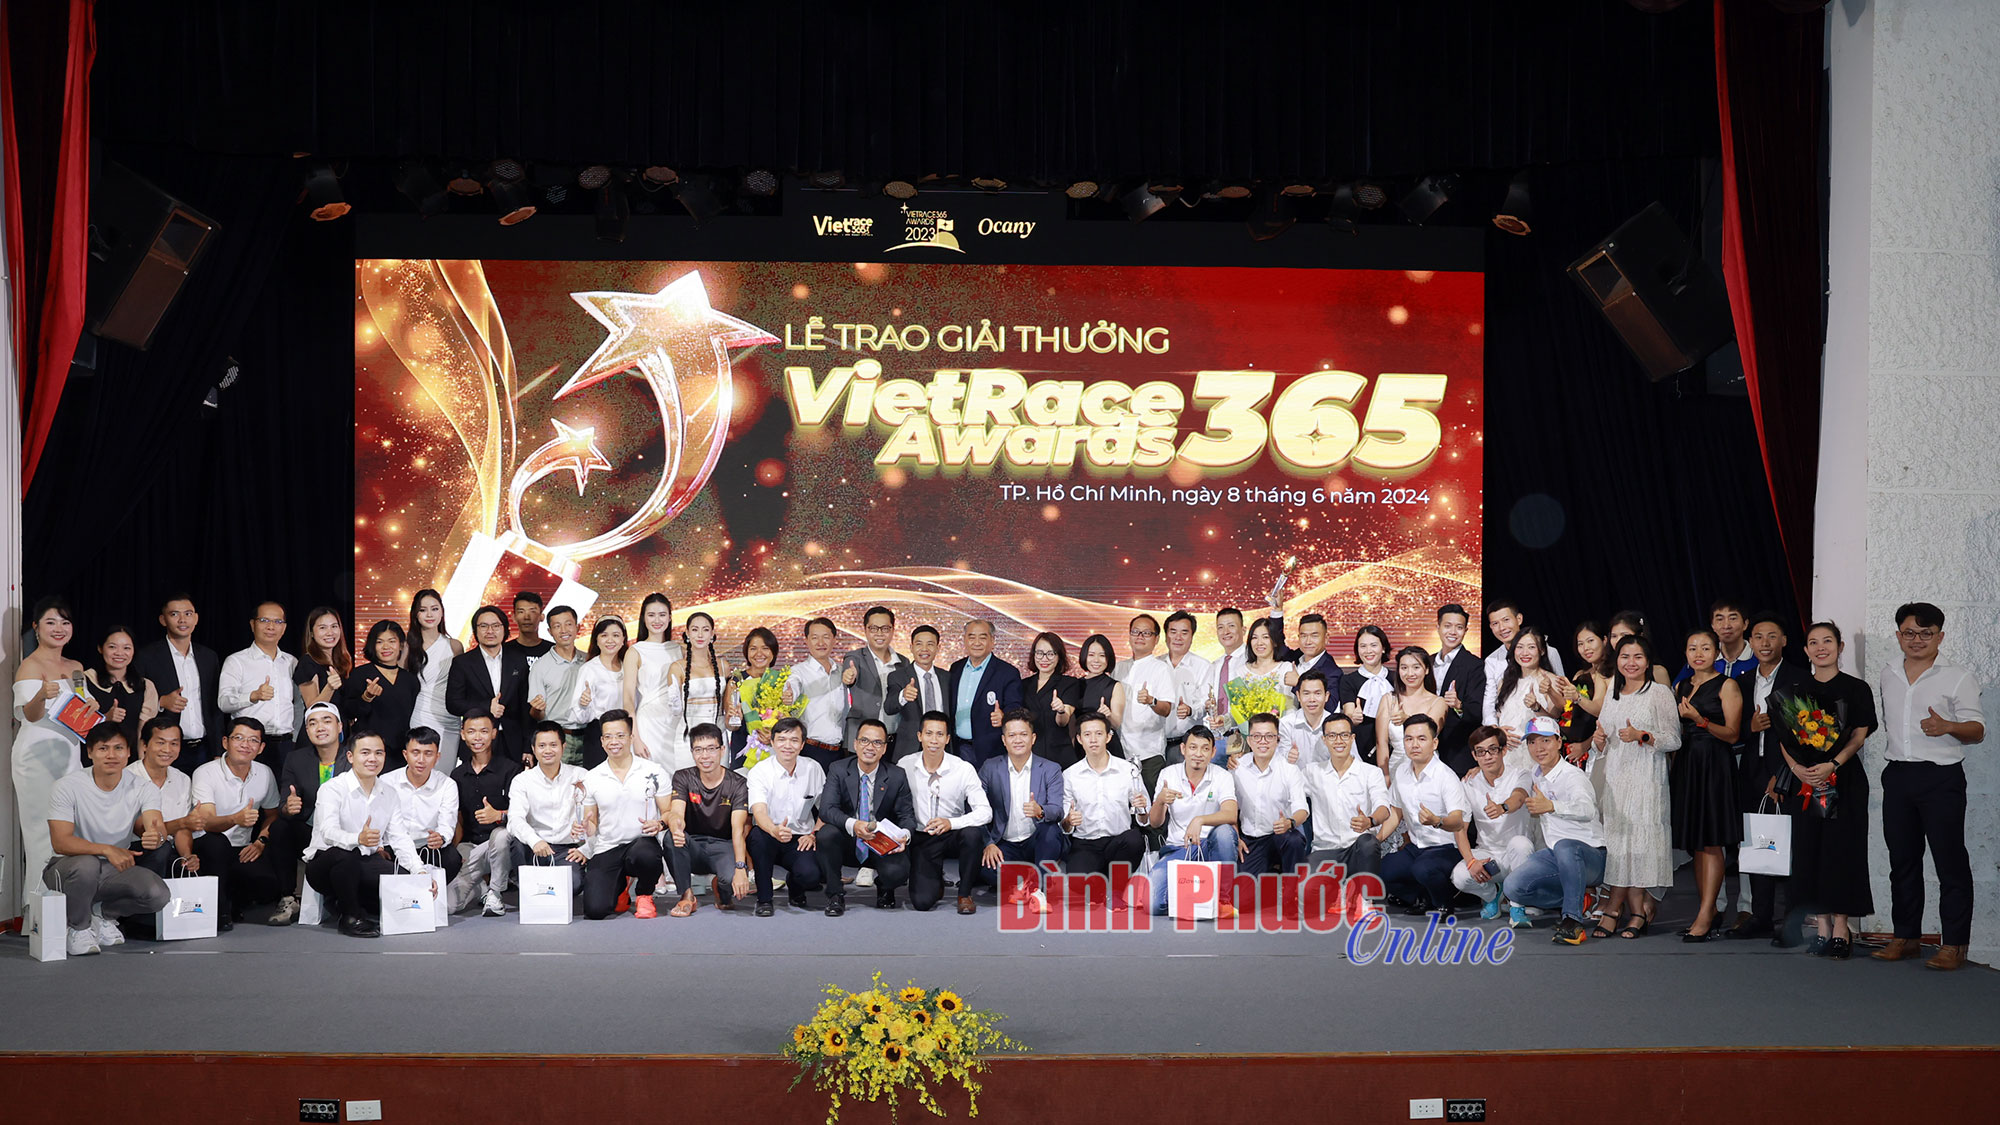 VietRace365 vinh danh những vận động viên, huấn luyện viên, các câu lạc bộ, đội, nhóm chạy bộ